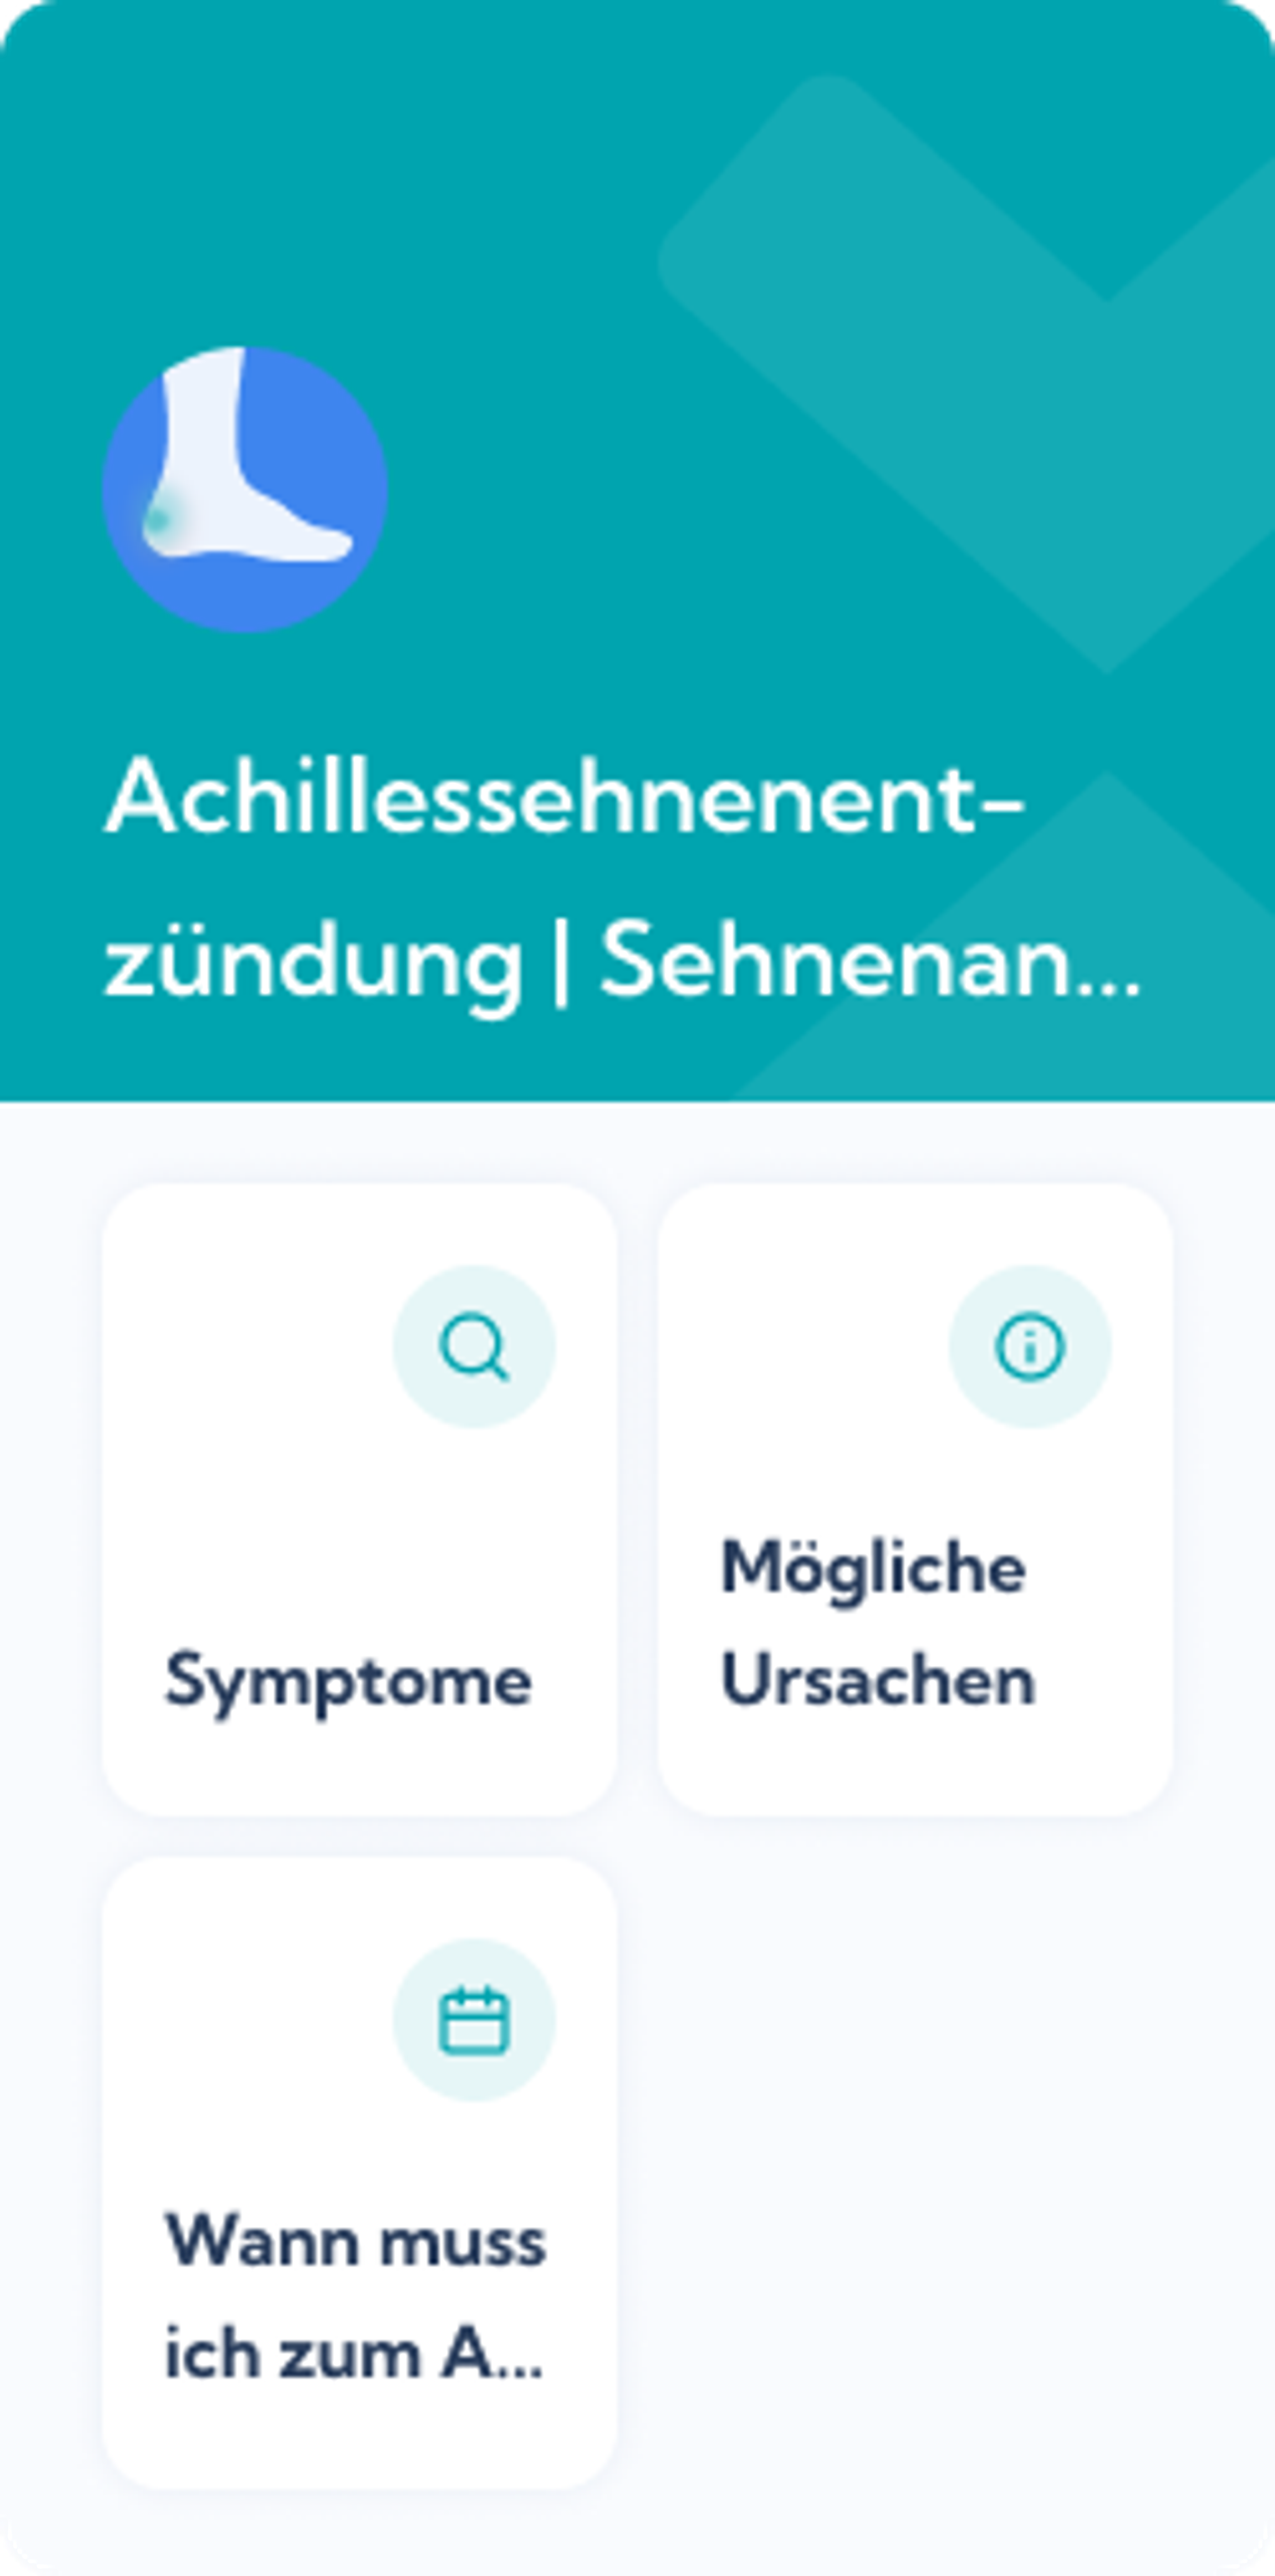 Achillessehnenentzündung (Sehnenansatz) Reha-Plan – Dashboard 